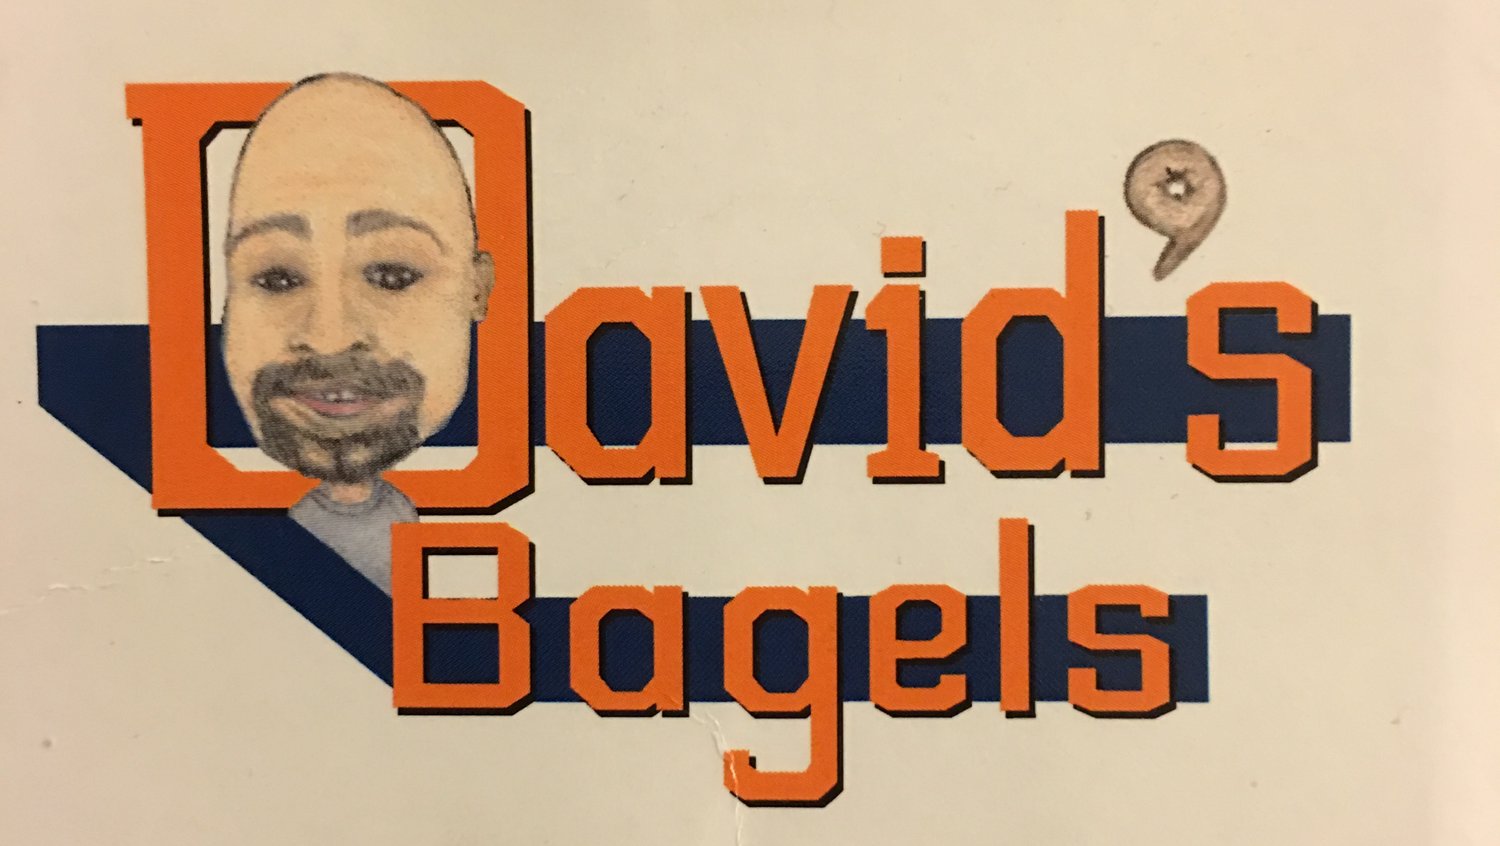 David's Bagels